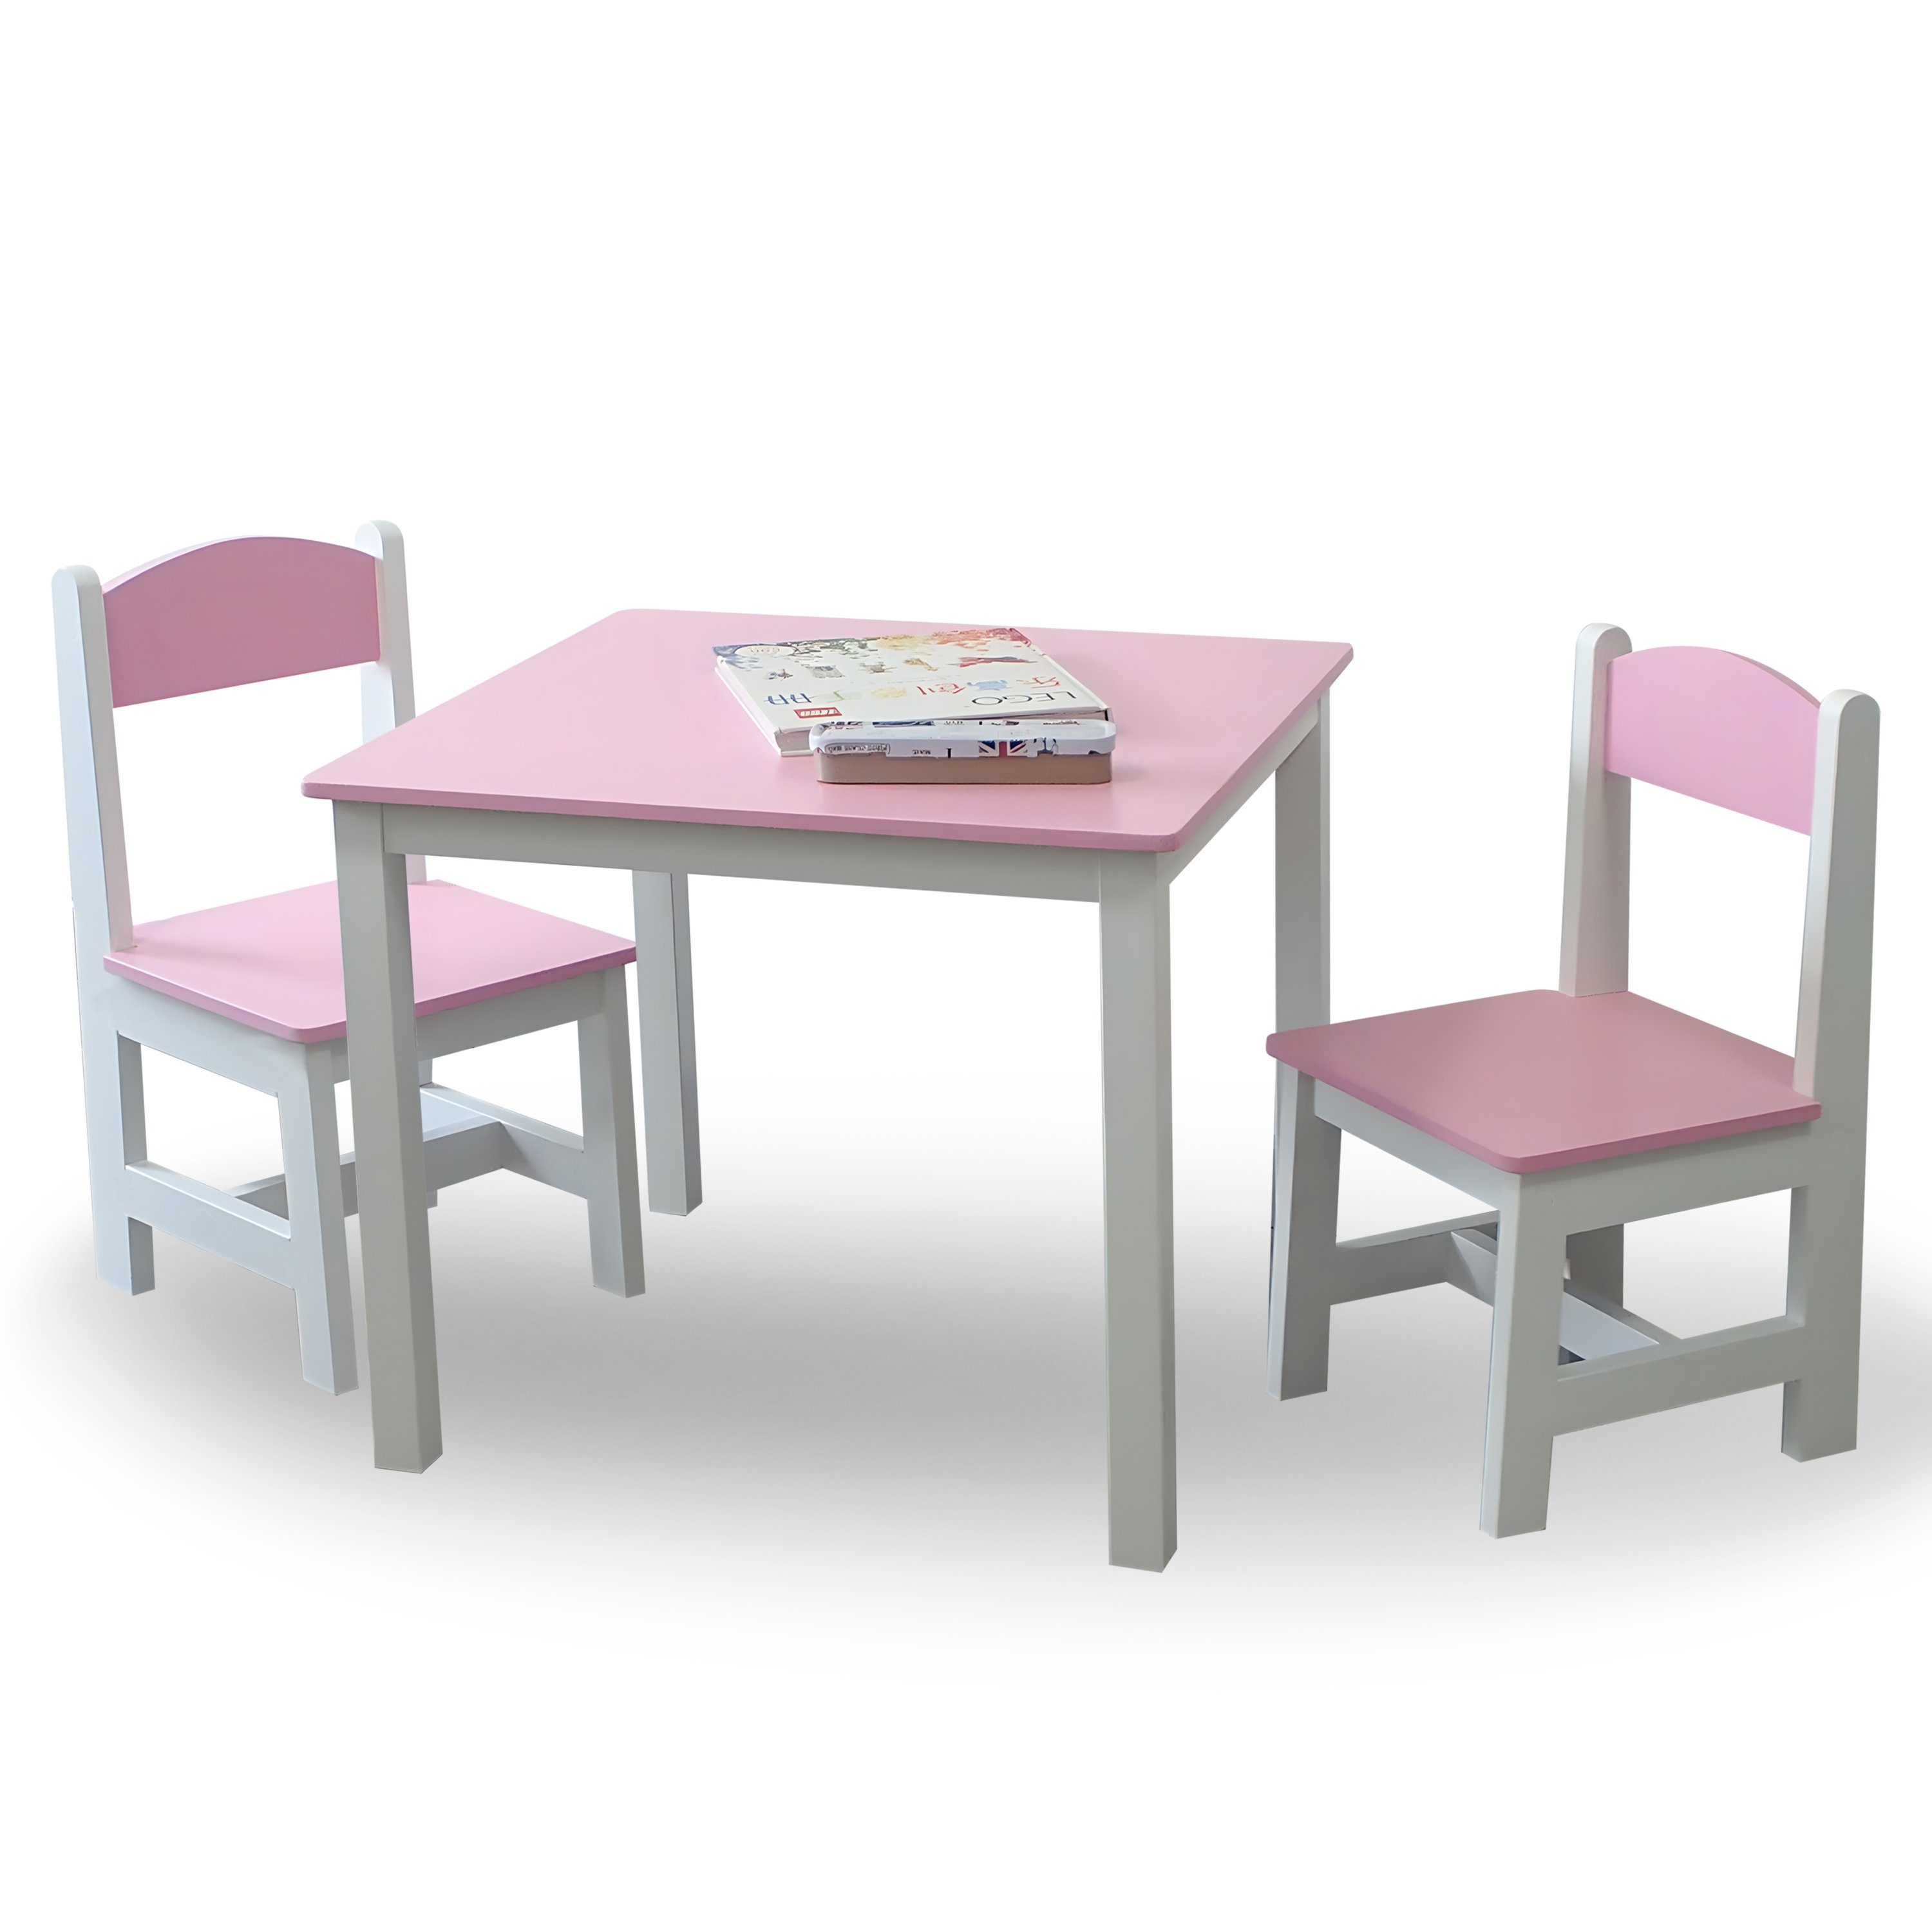 Rosa+Weiß Maltisch Kindermöbelset habeig Hocker 2 Kindertisch Stühle Kindersitzgruppe & 60x50x50cm